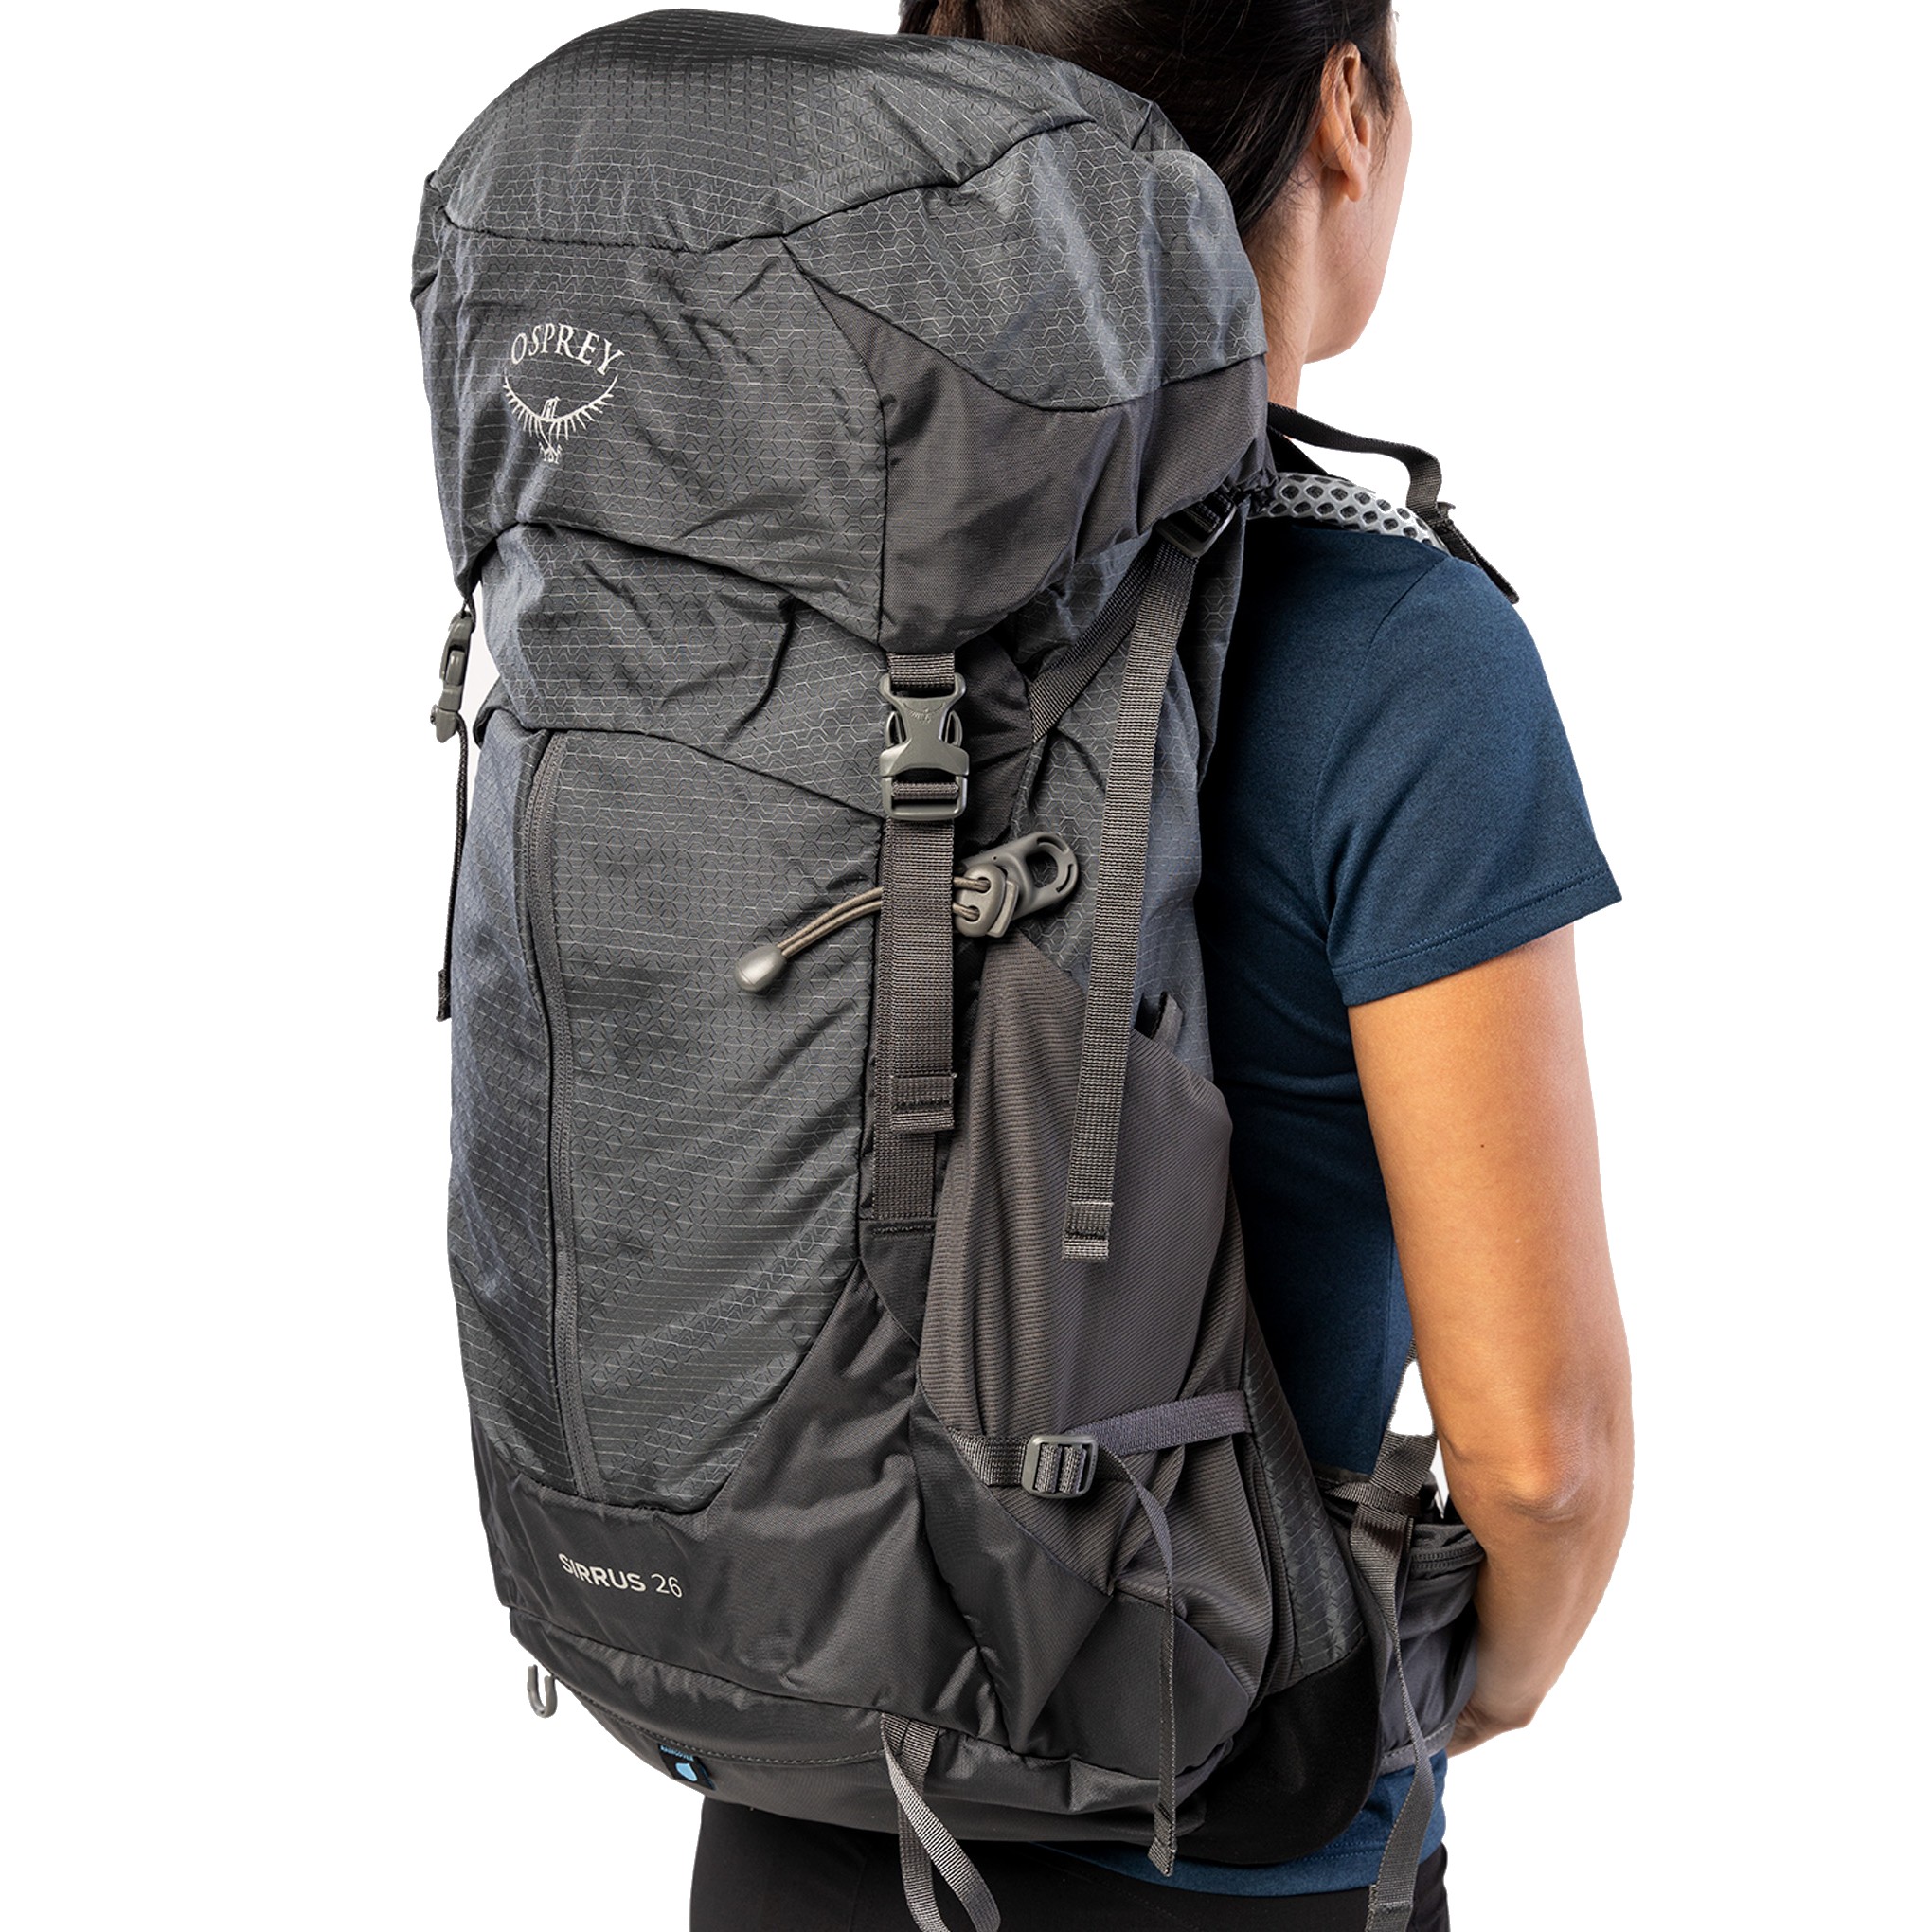 Osprey Sirrus 26 Women's Hiking Backpack